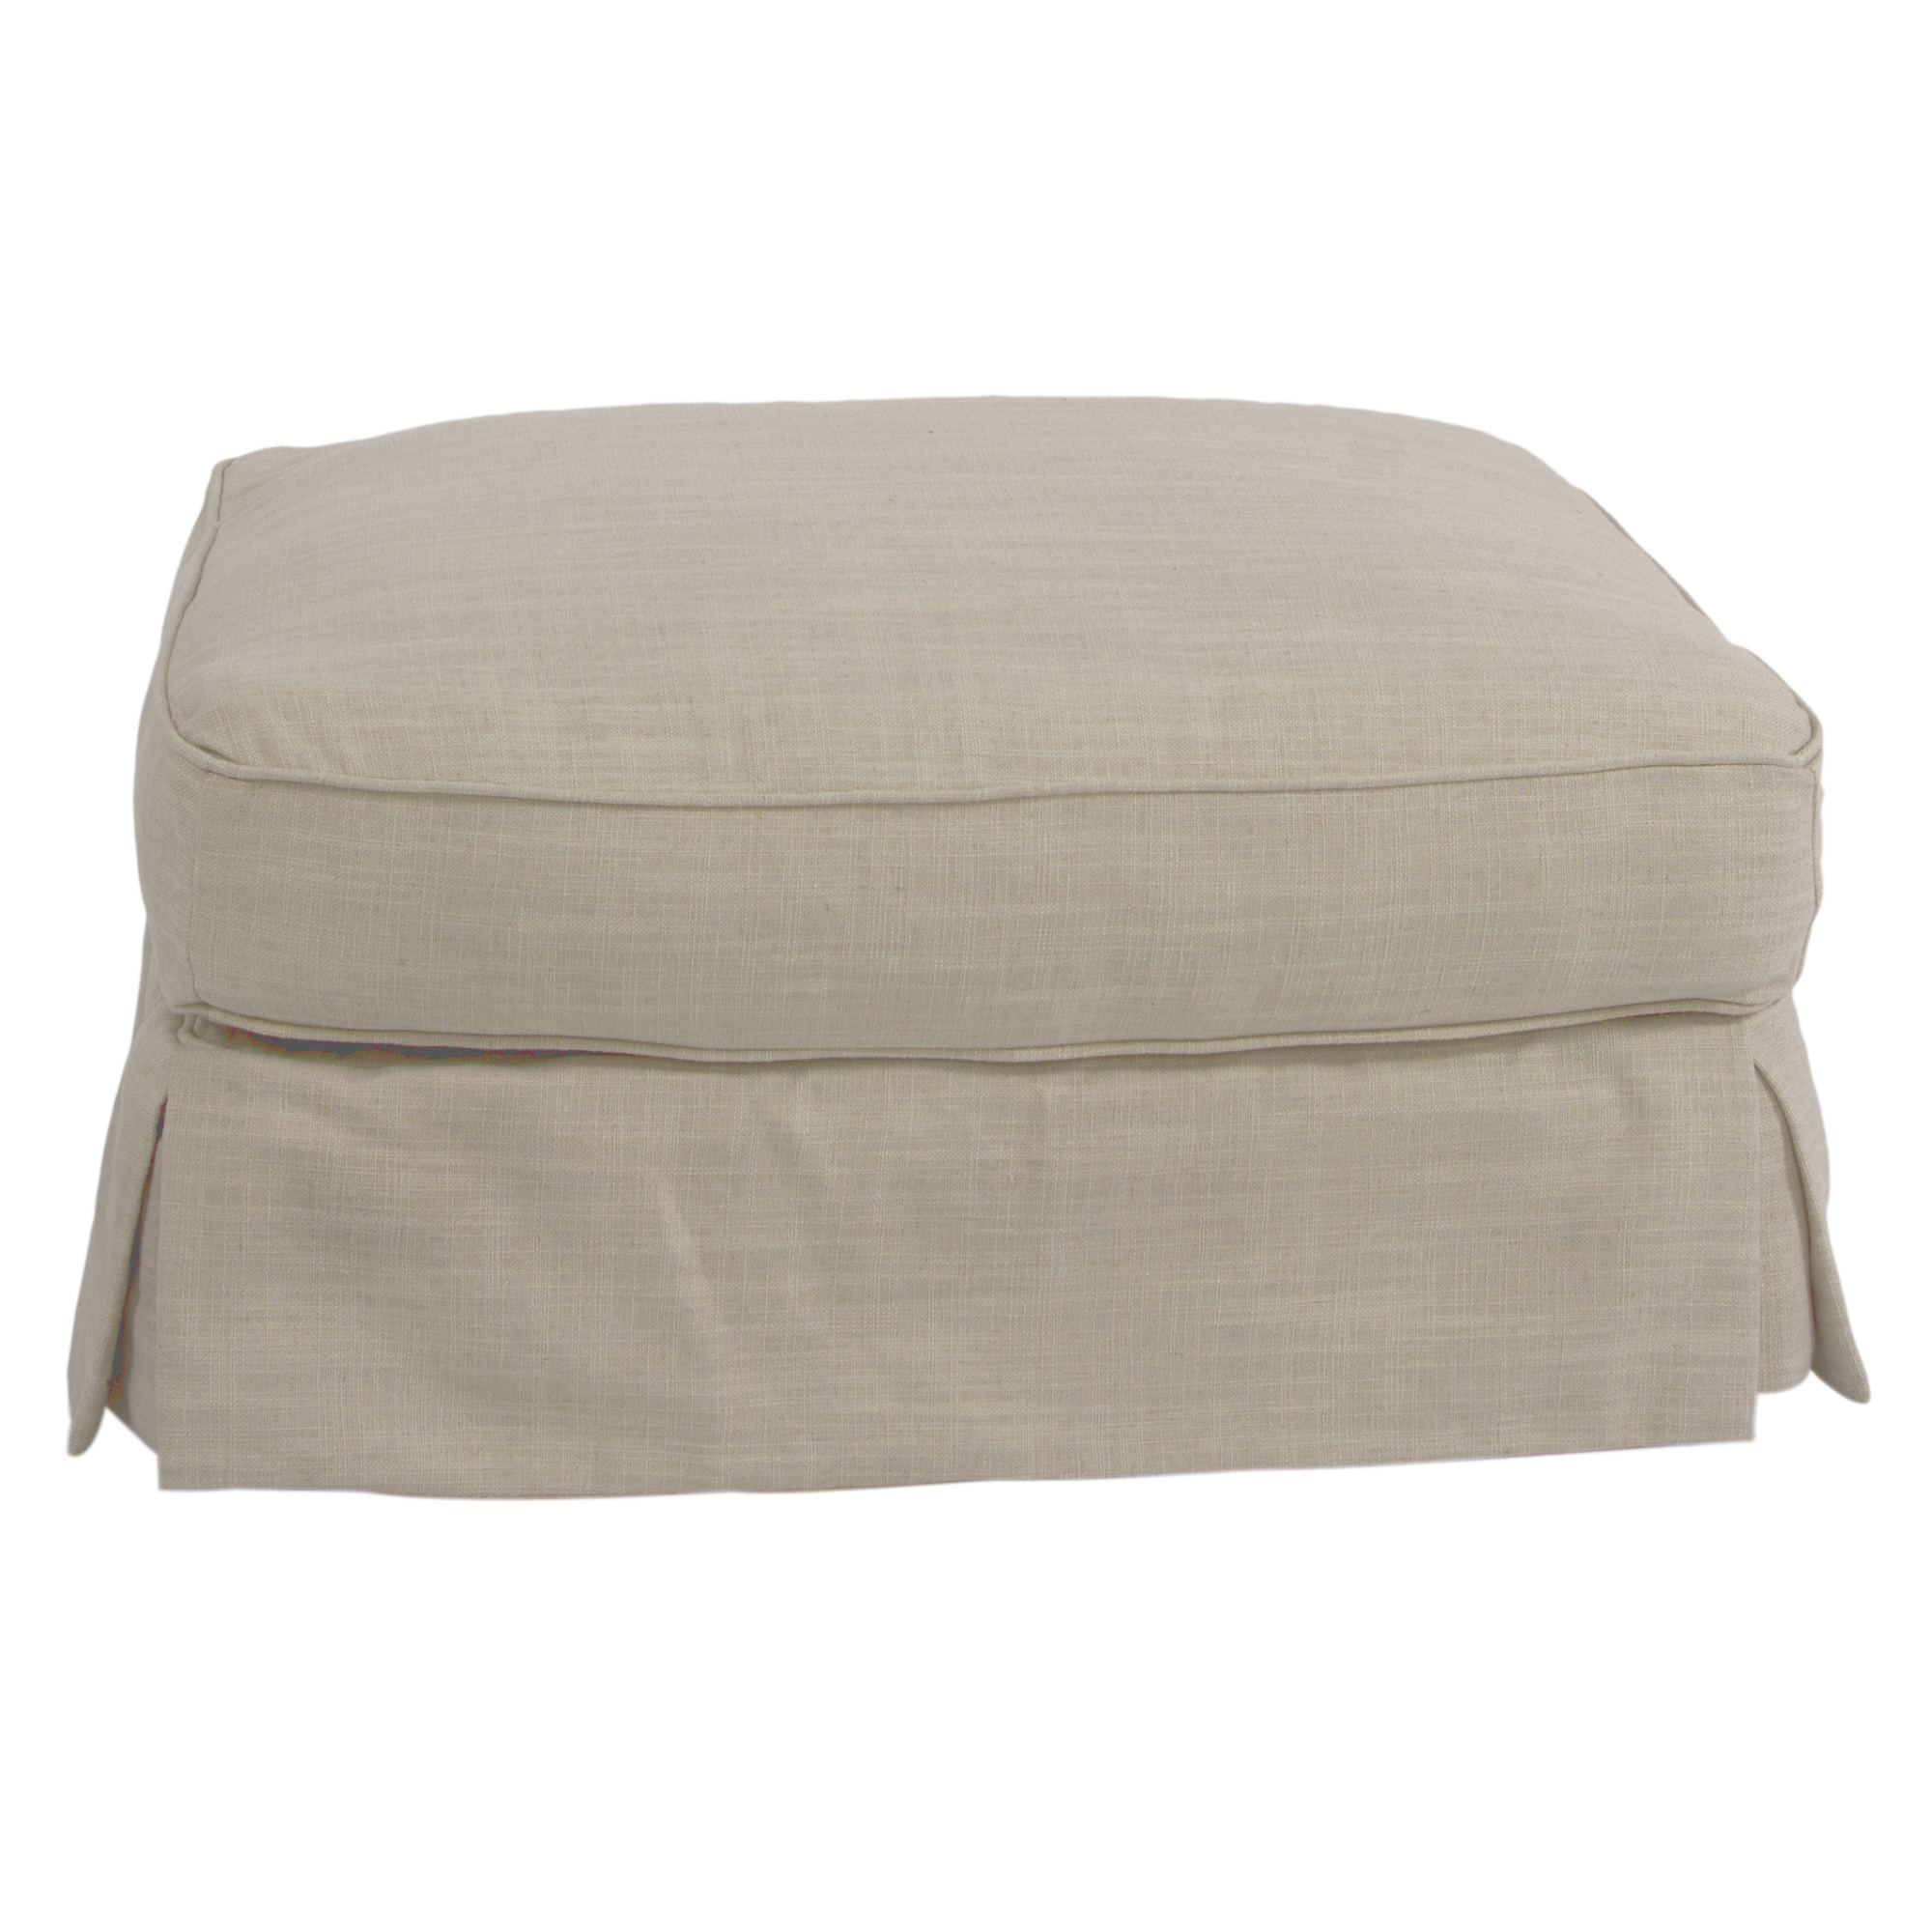 Americana Linen Upholstered Pillow Top Ottoman